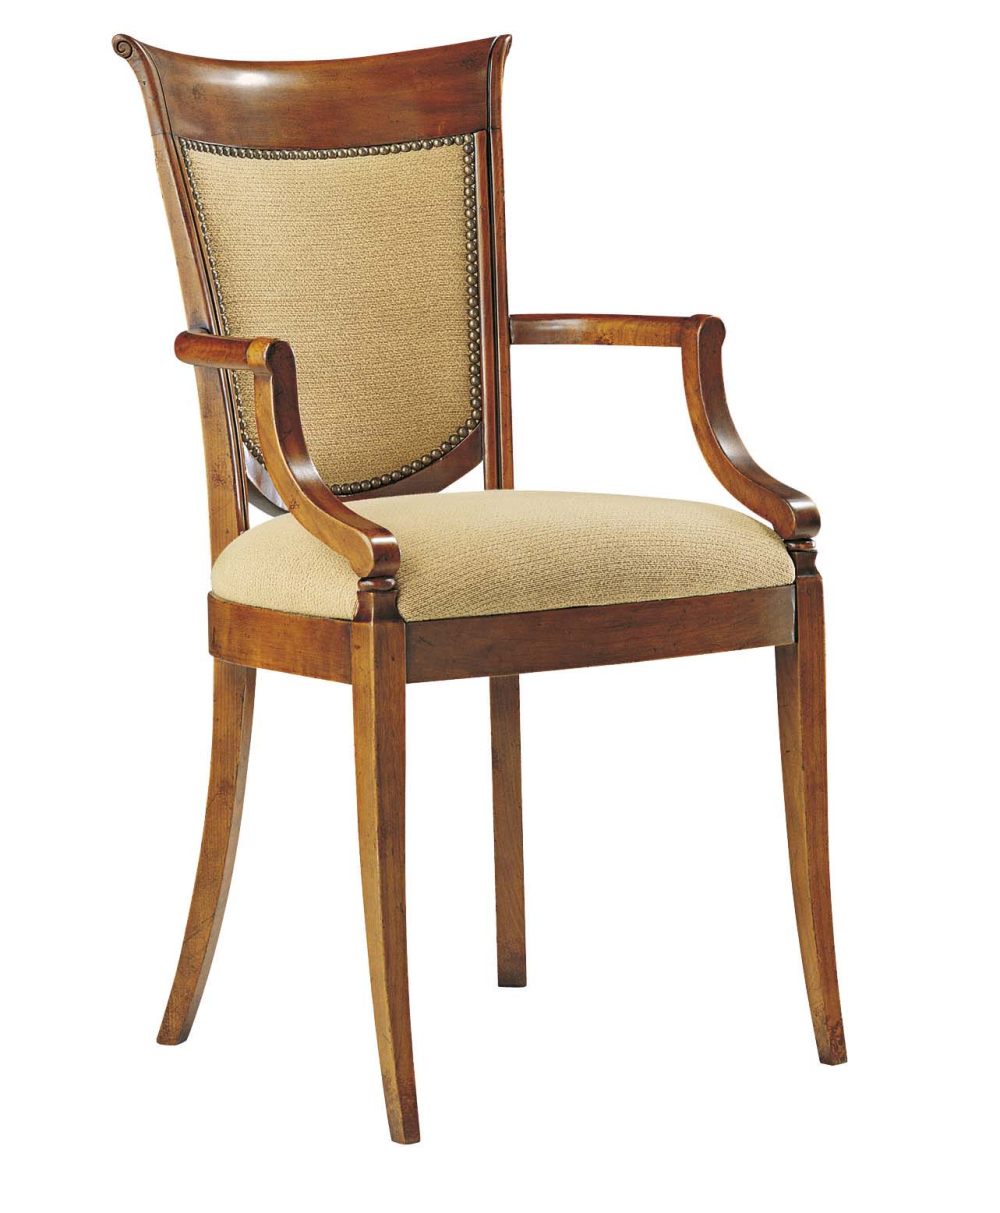 分享法国品牌Collinet 的几把椅子_024FG.jpg